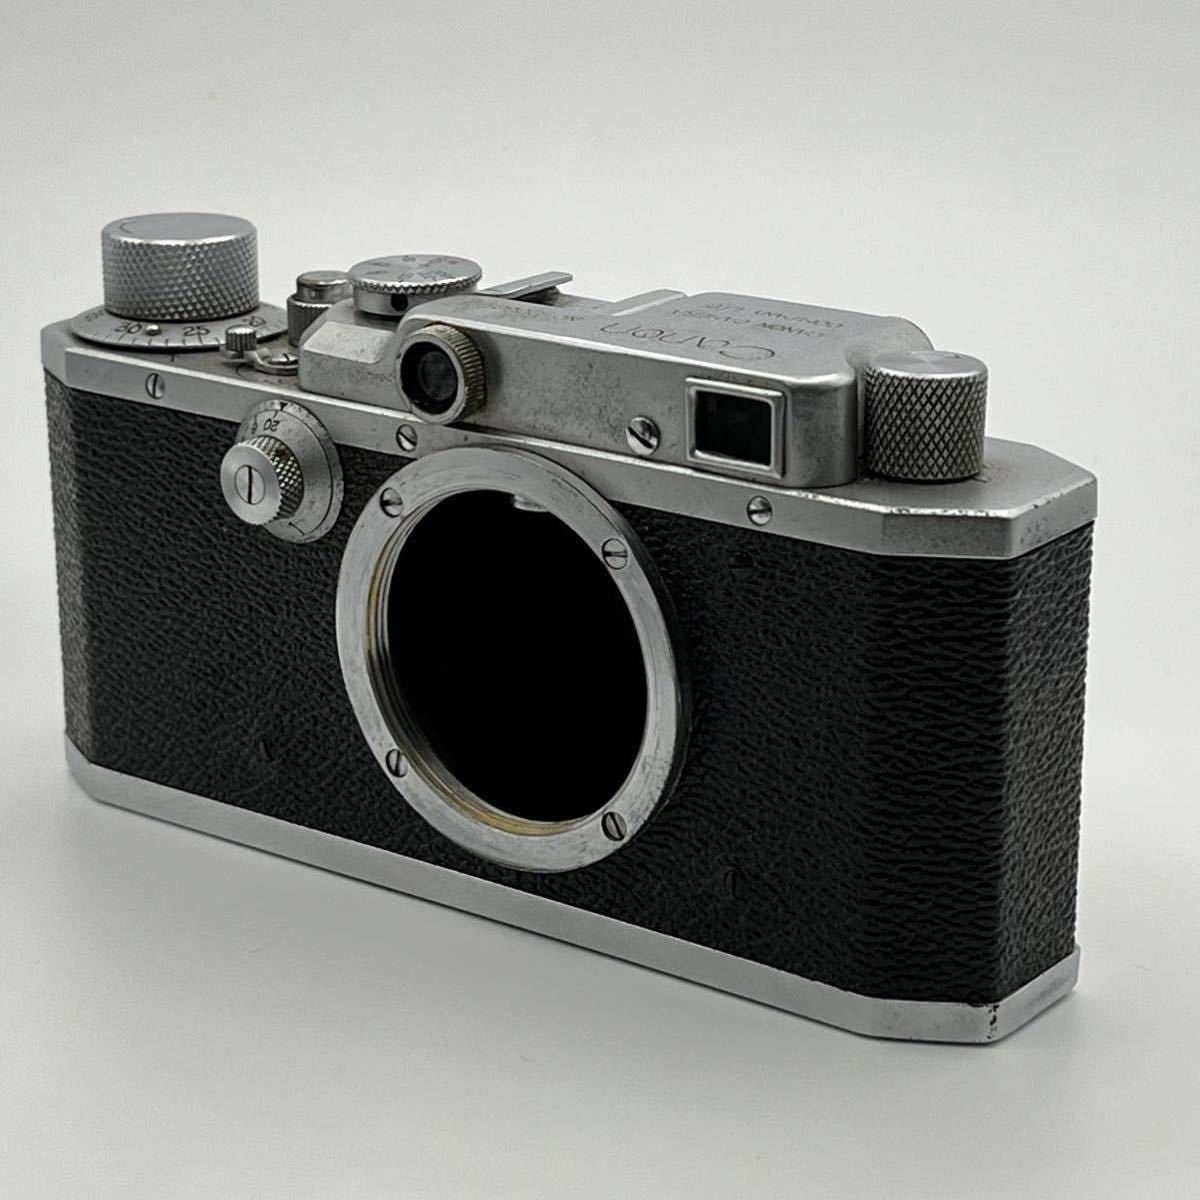 Canon SⅡ キヤノン S2型 1946年10月発売MADE IN OCCUPIED JAPAN 占領下日本製 / SERENAR 5cm f3.5 セレナー 50mm Leica ライカ Lマウント_画像3